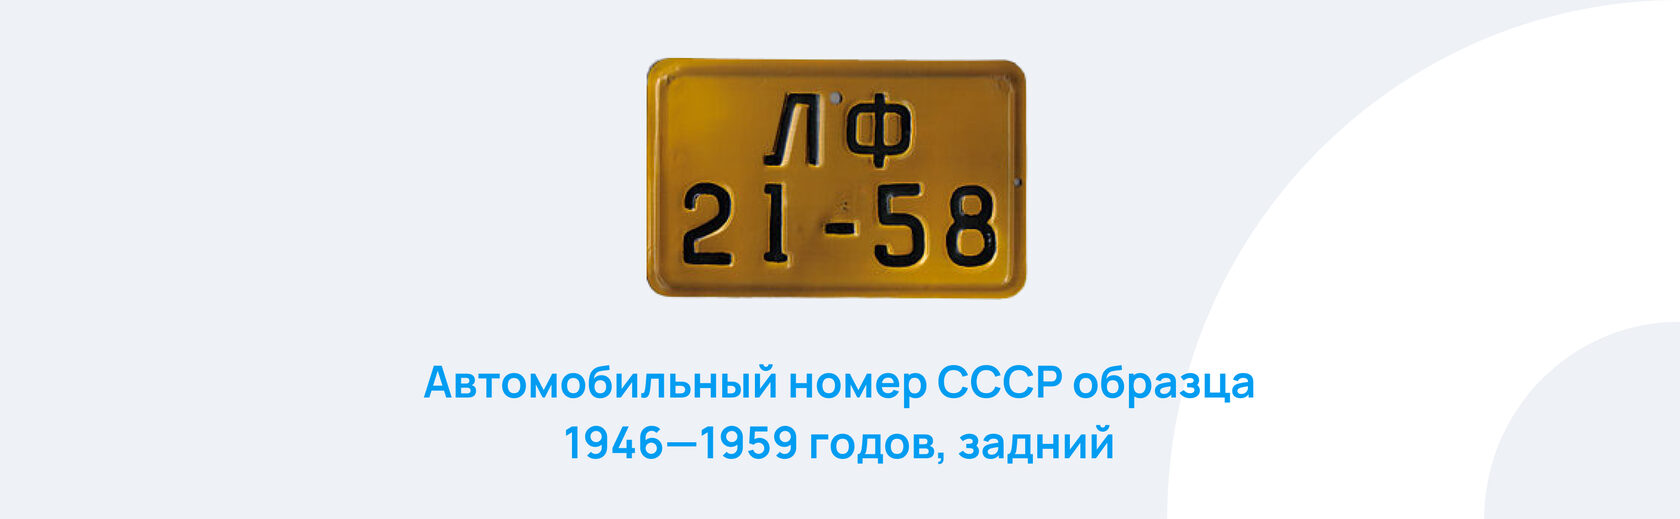 Ваш номер изменен. Эволюция номерных знаков России.